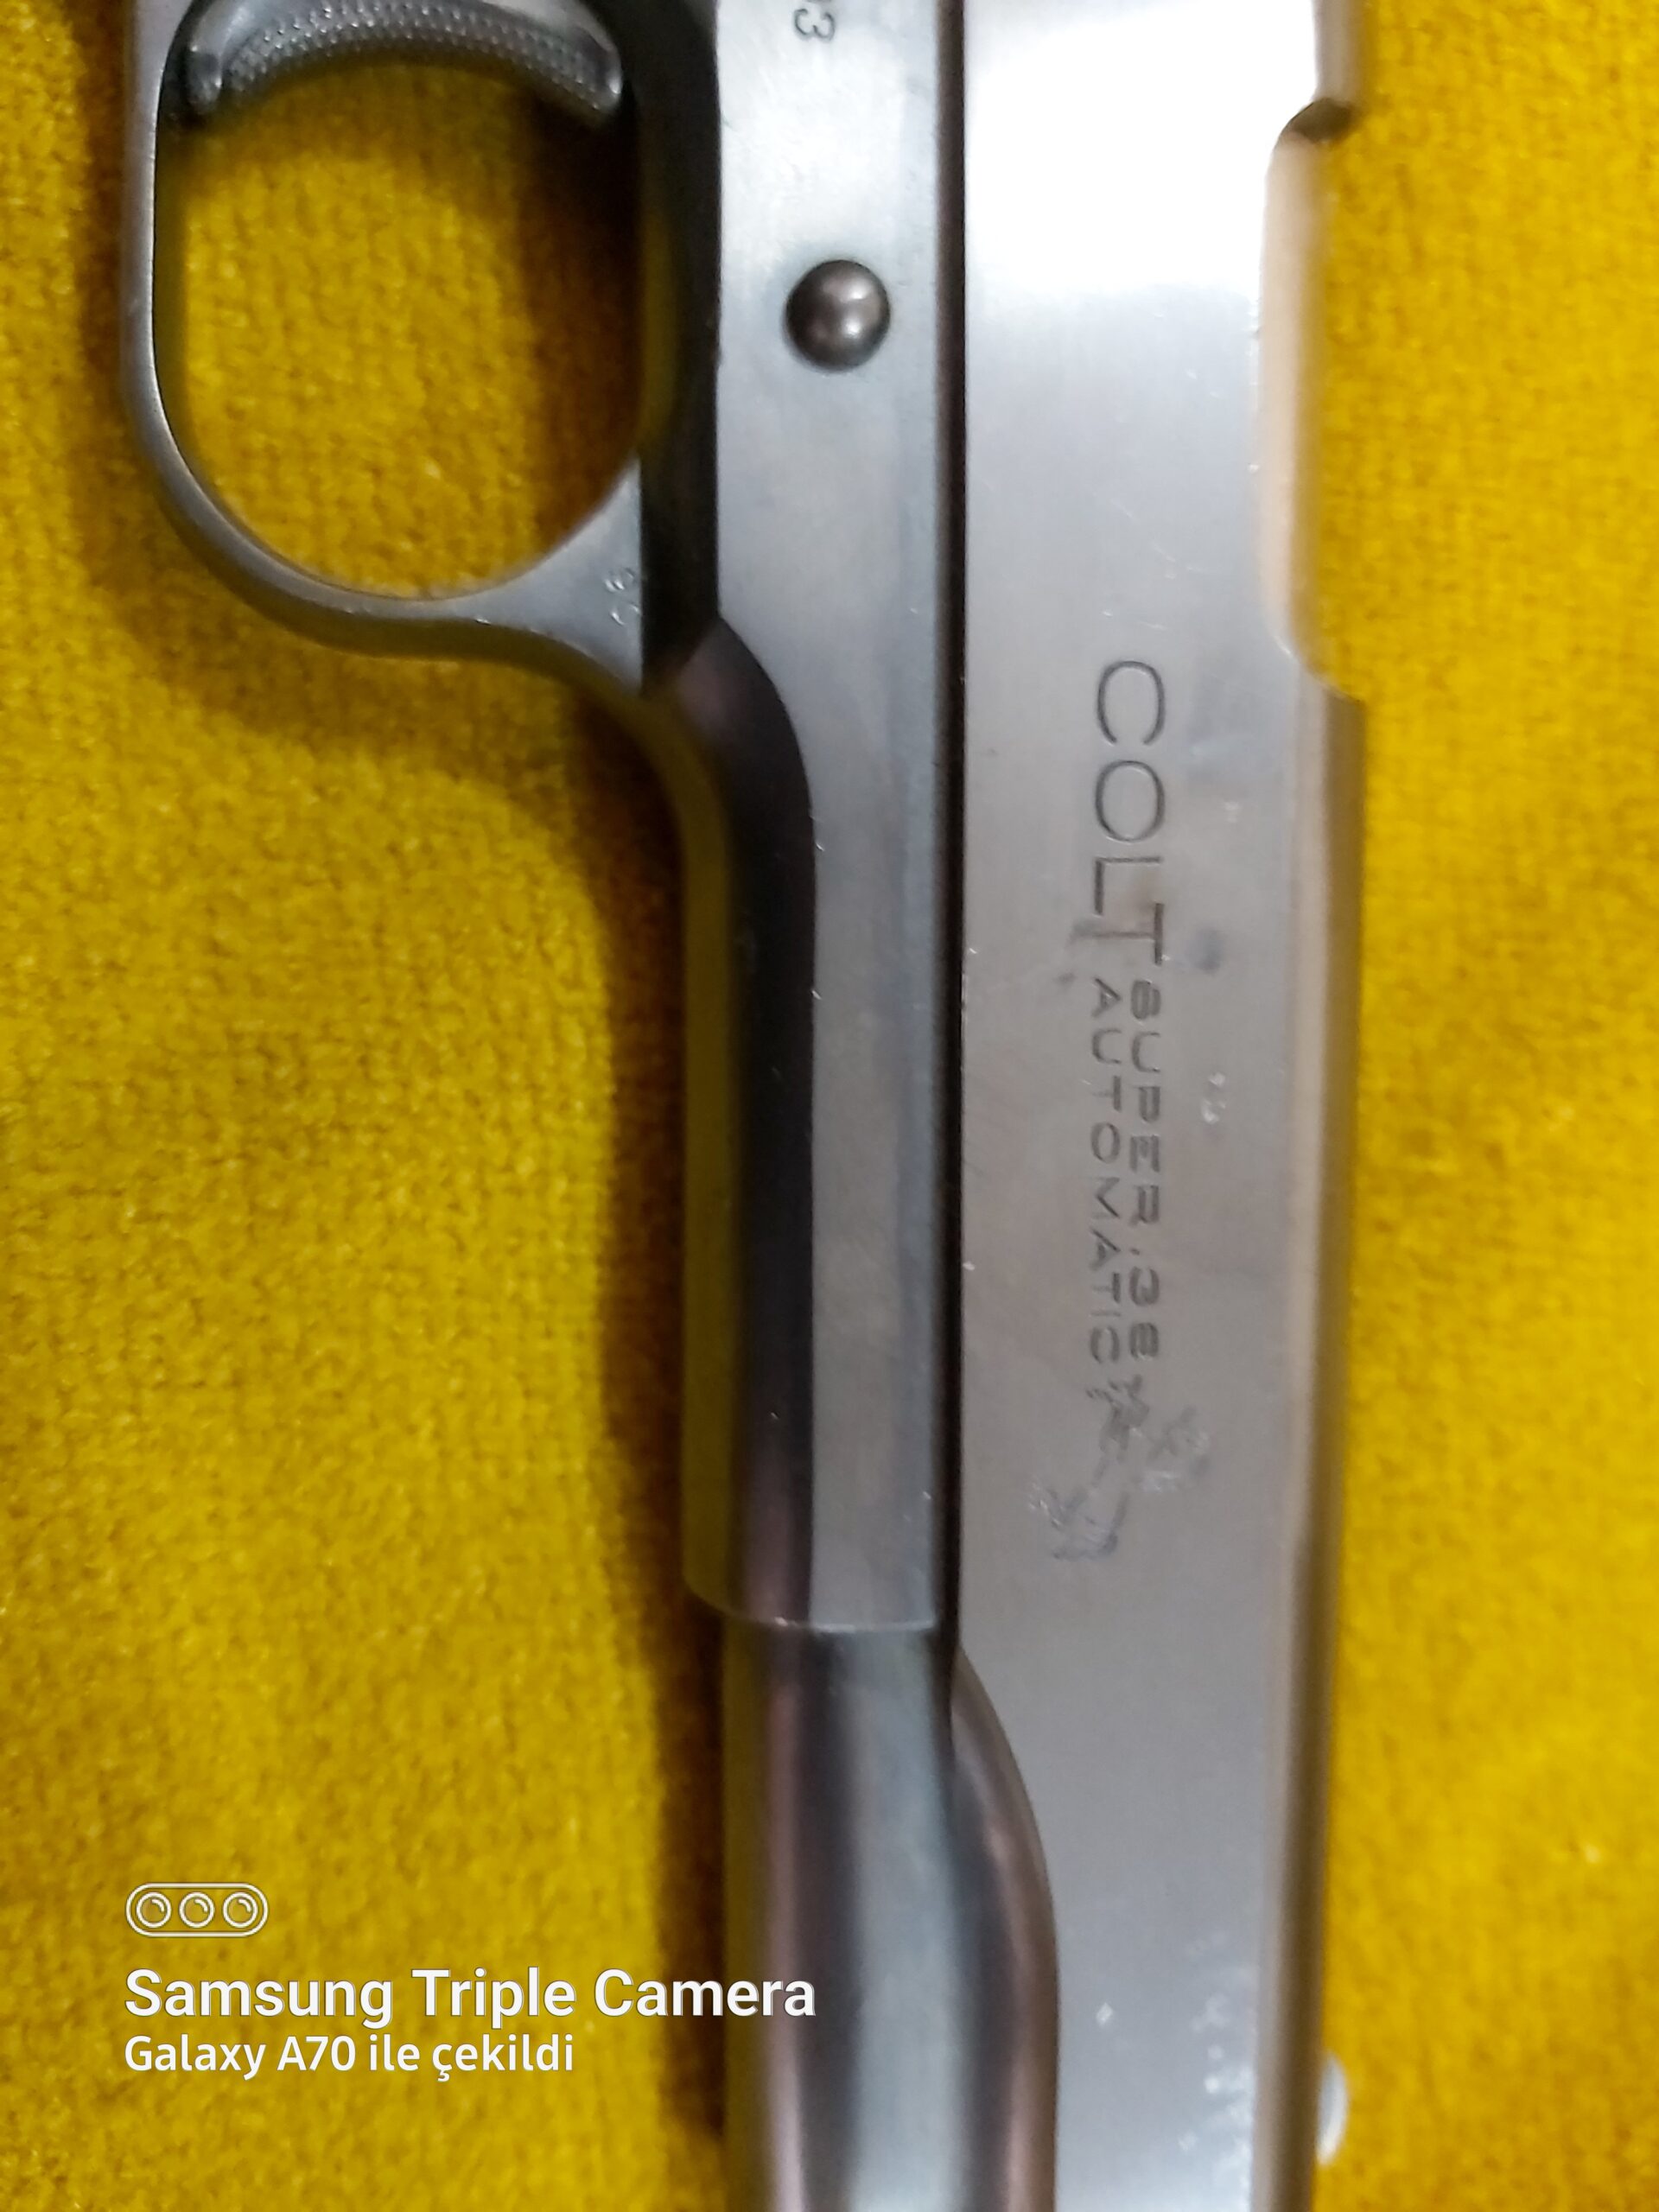 Q911 38 kalibre  colt